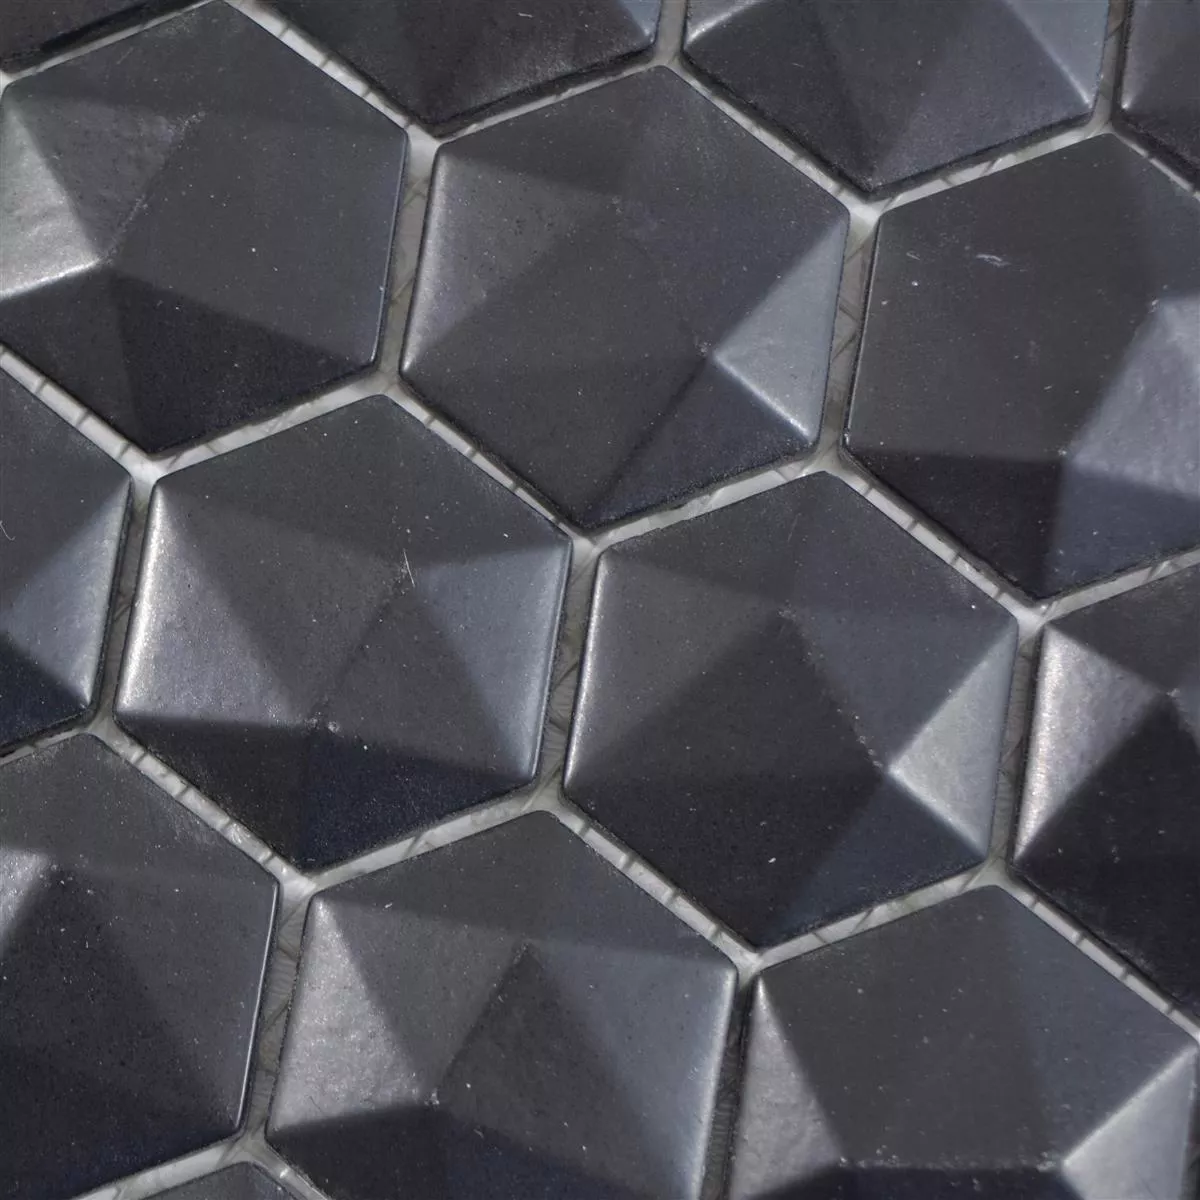 Muestra Mosaico De Cristal Azulejos Benevento Hexagonales 3D Negro